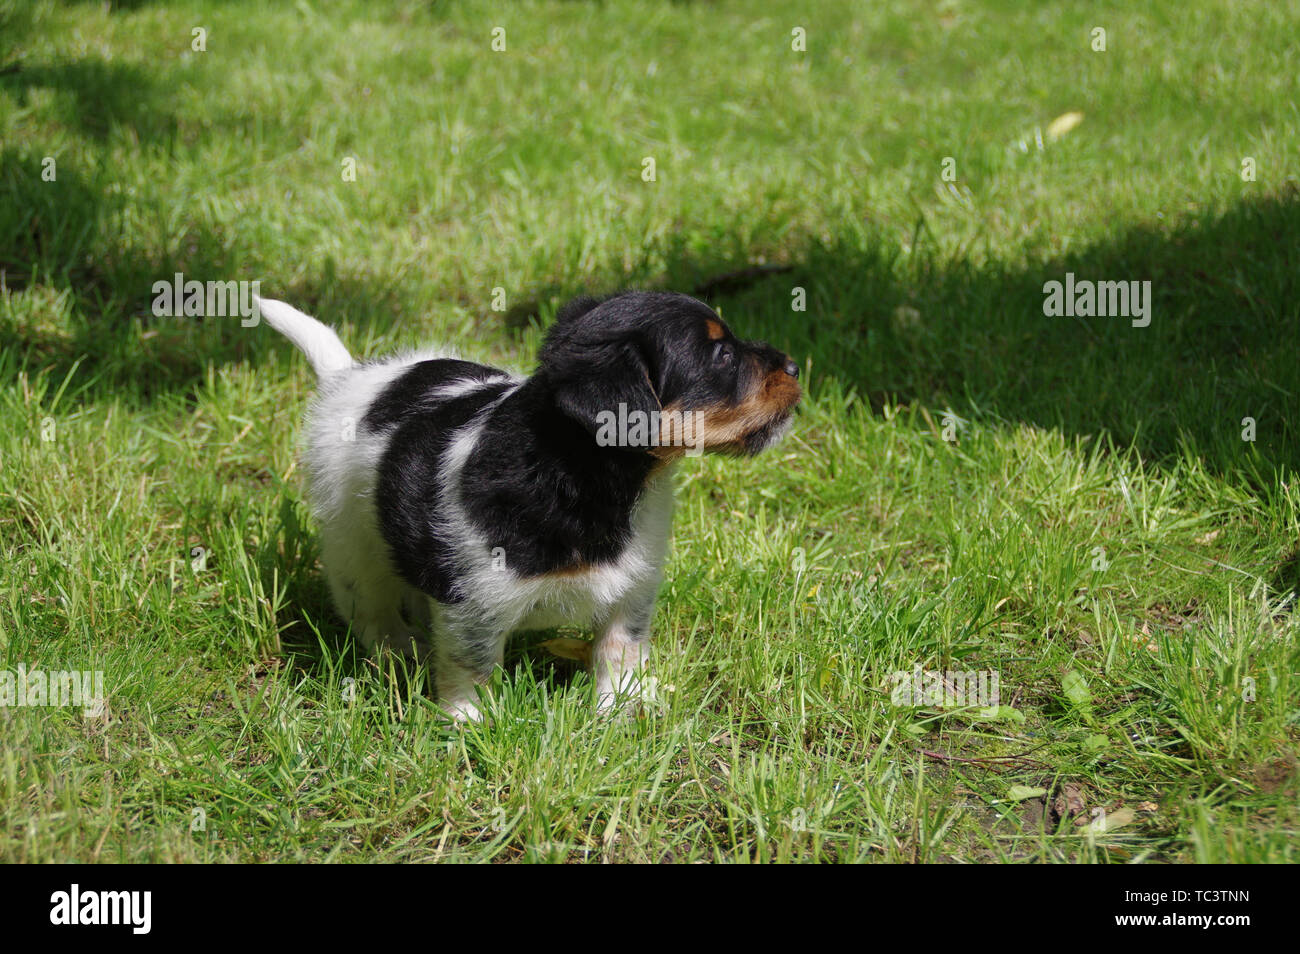 Il pinted cucciolo è camminare sull'erba. Il piccolo cane arriva a conoscere il mondo con curiosità. Foto Stock